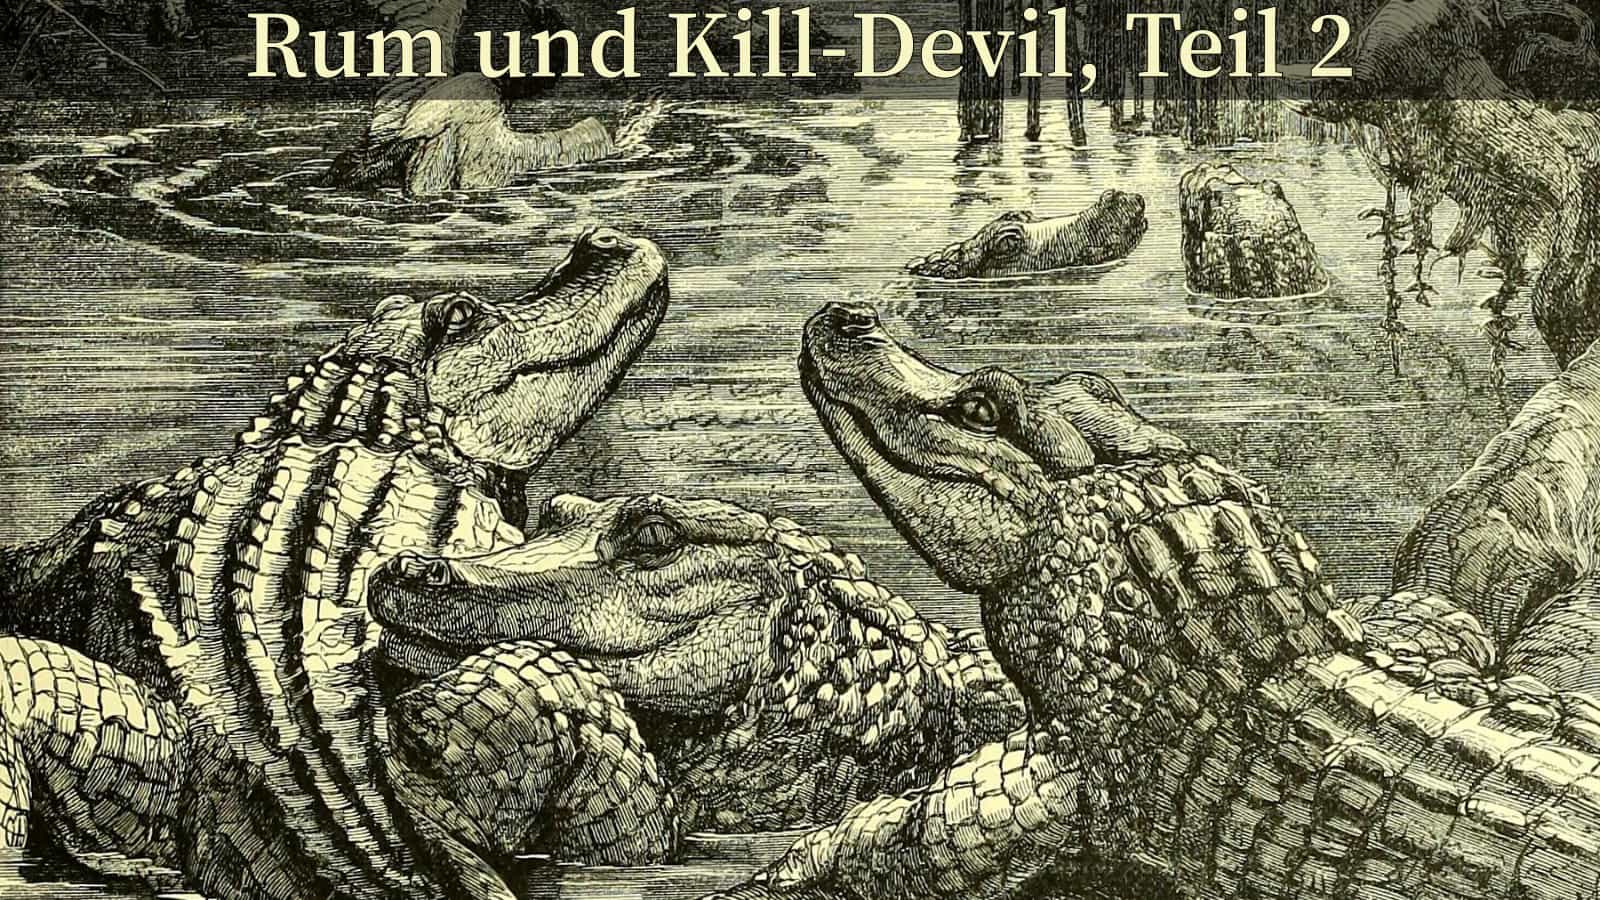 Titelbild - Rum und Kill-Devil, Teil 2.